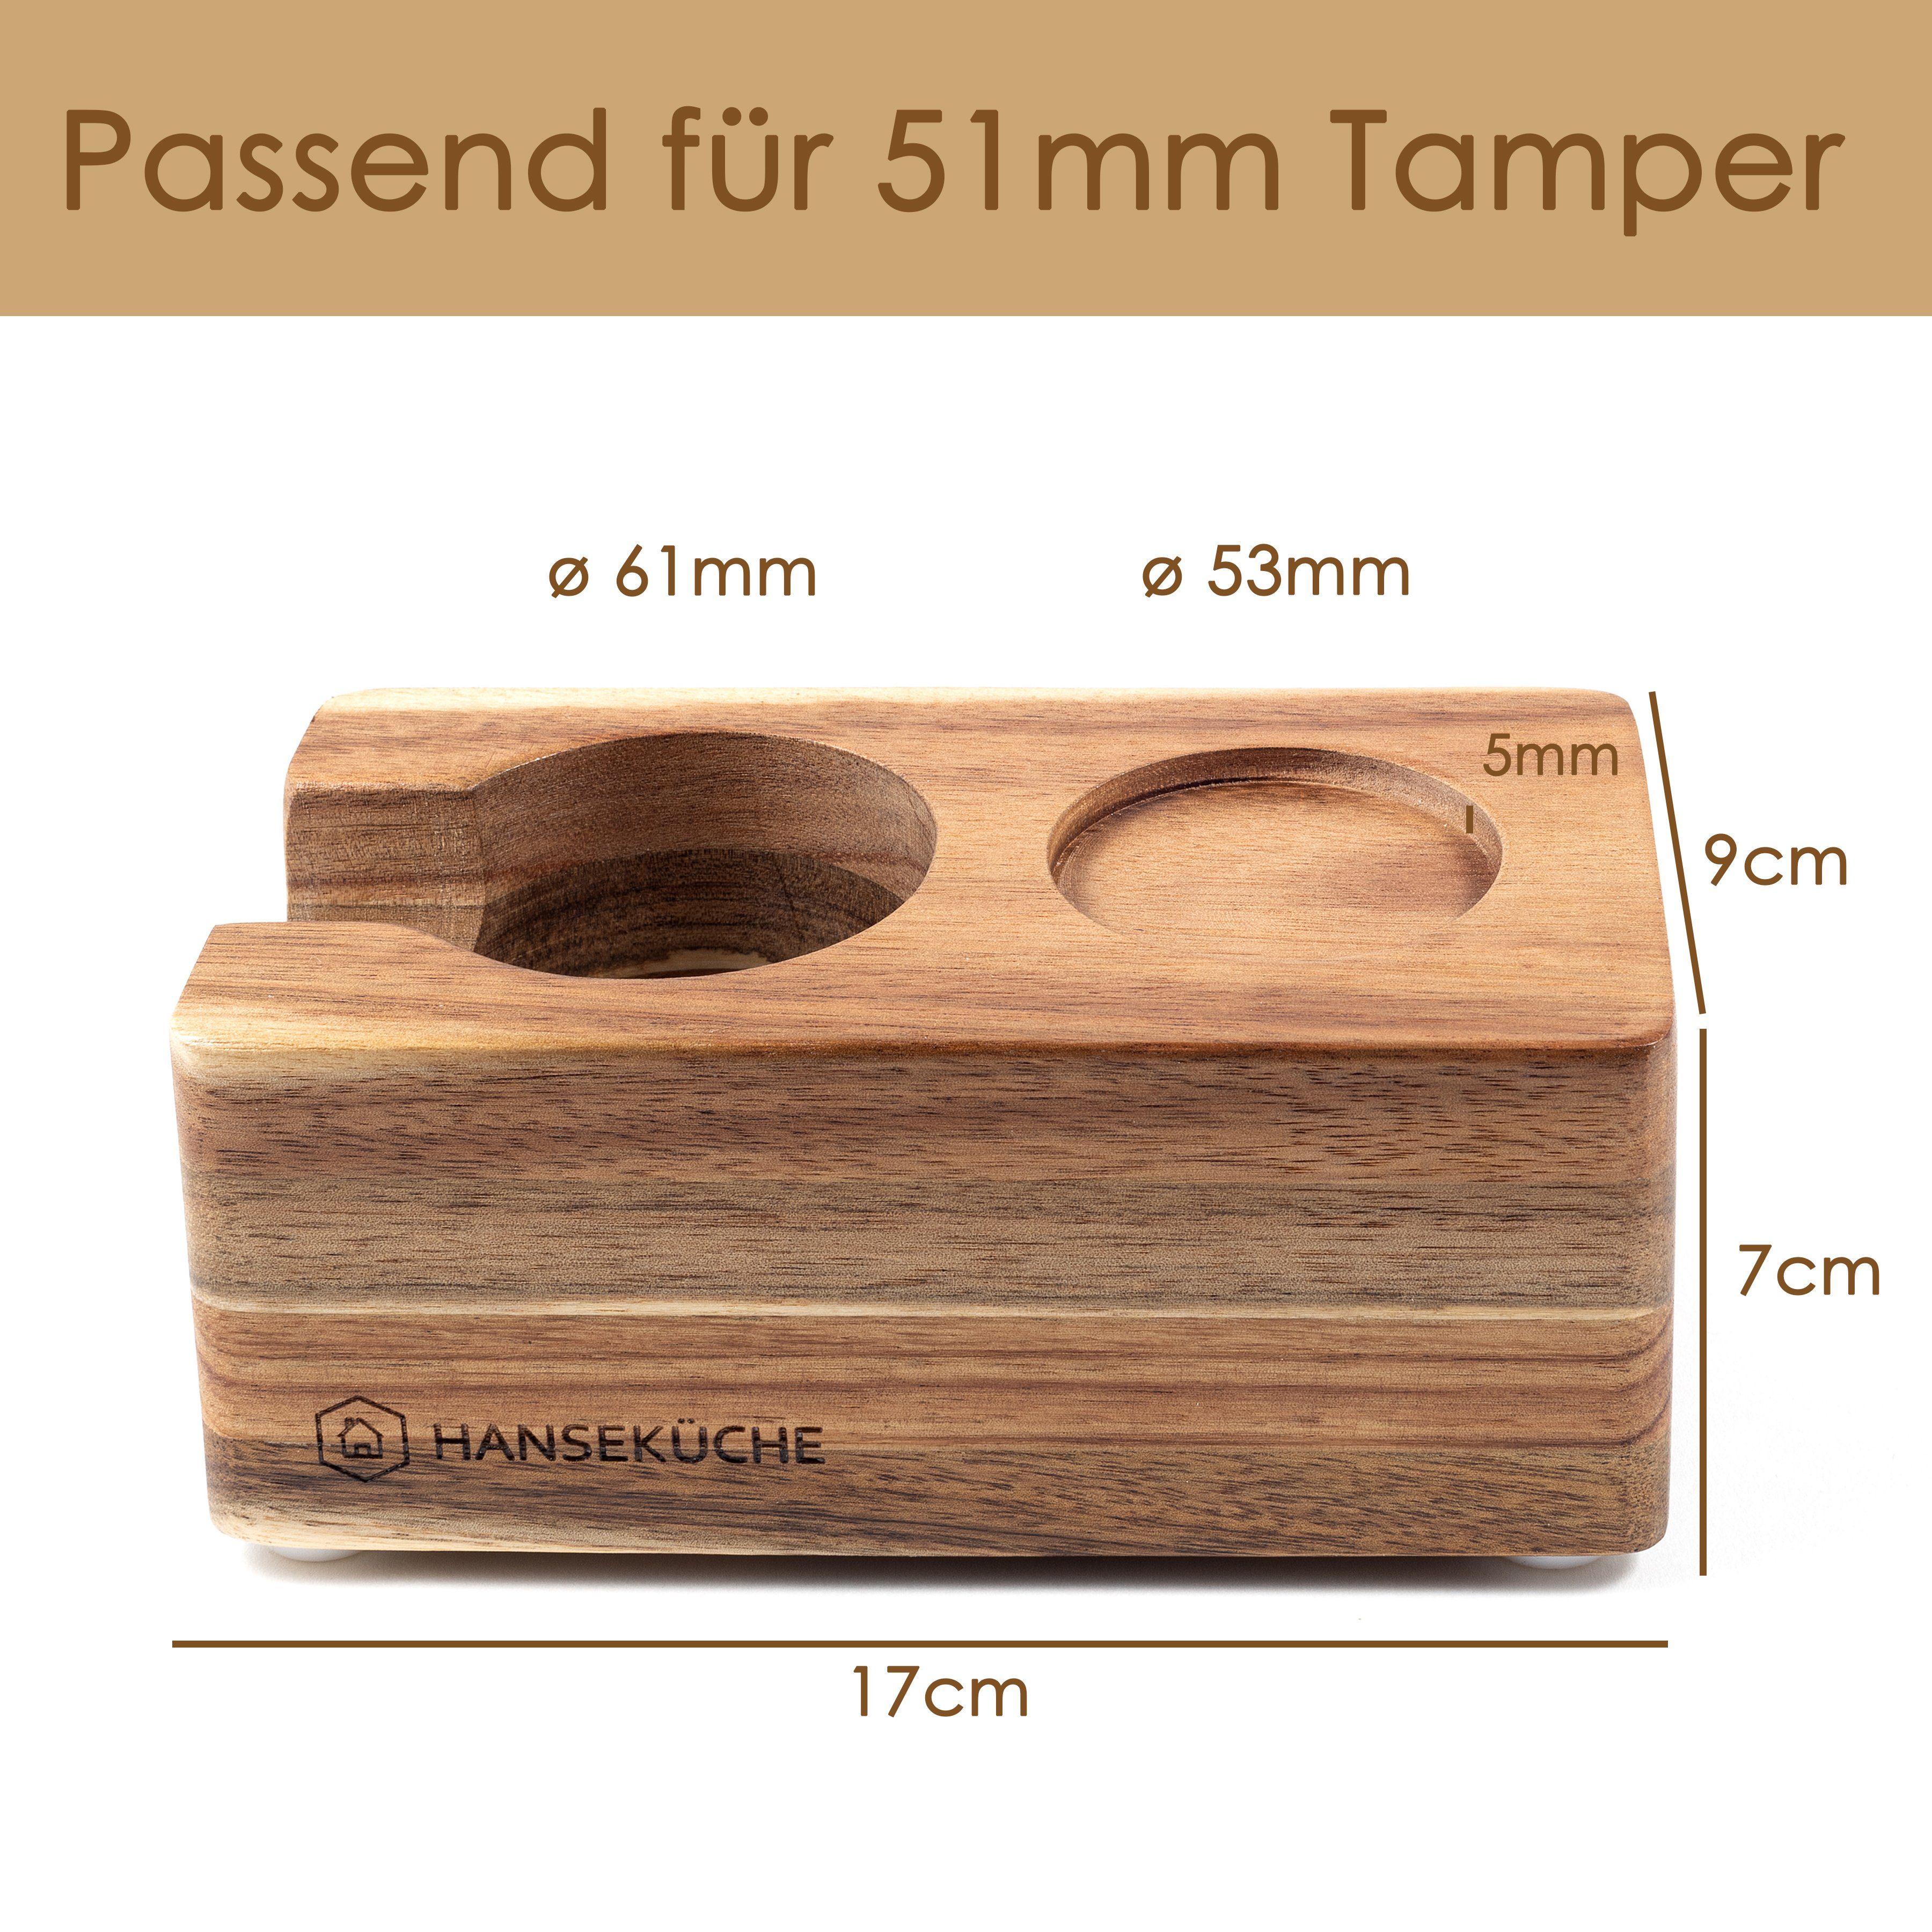 Hanseküche Tamperstation Tamperstation aus zu reinigen Design, Hygienisch Zeitloses hochwertigem leicht & Akazienholz